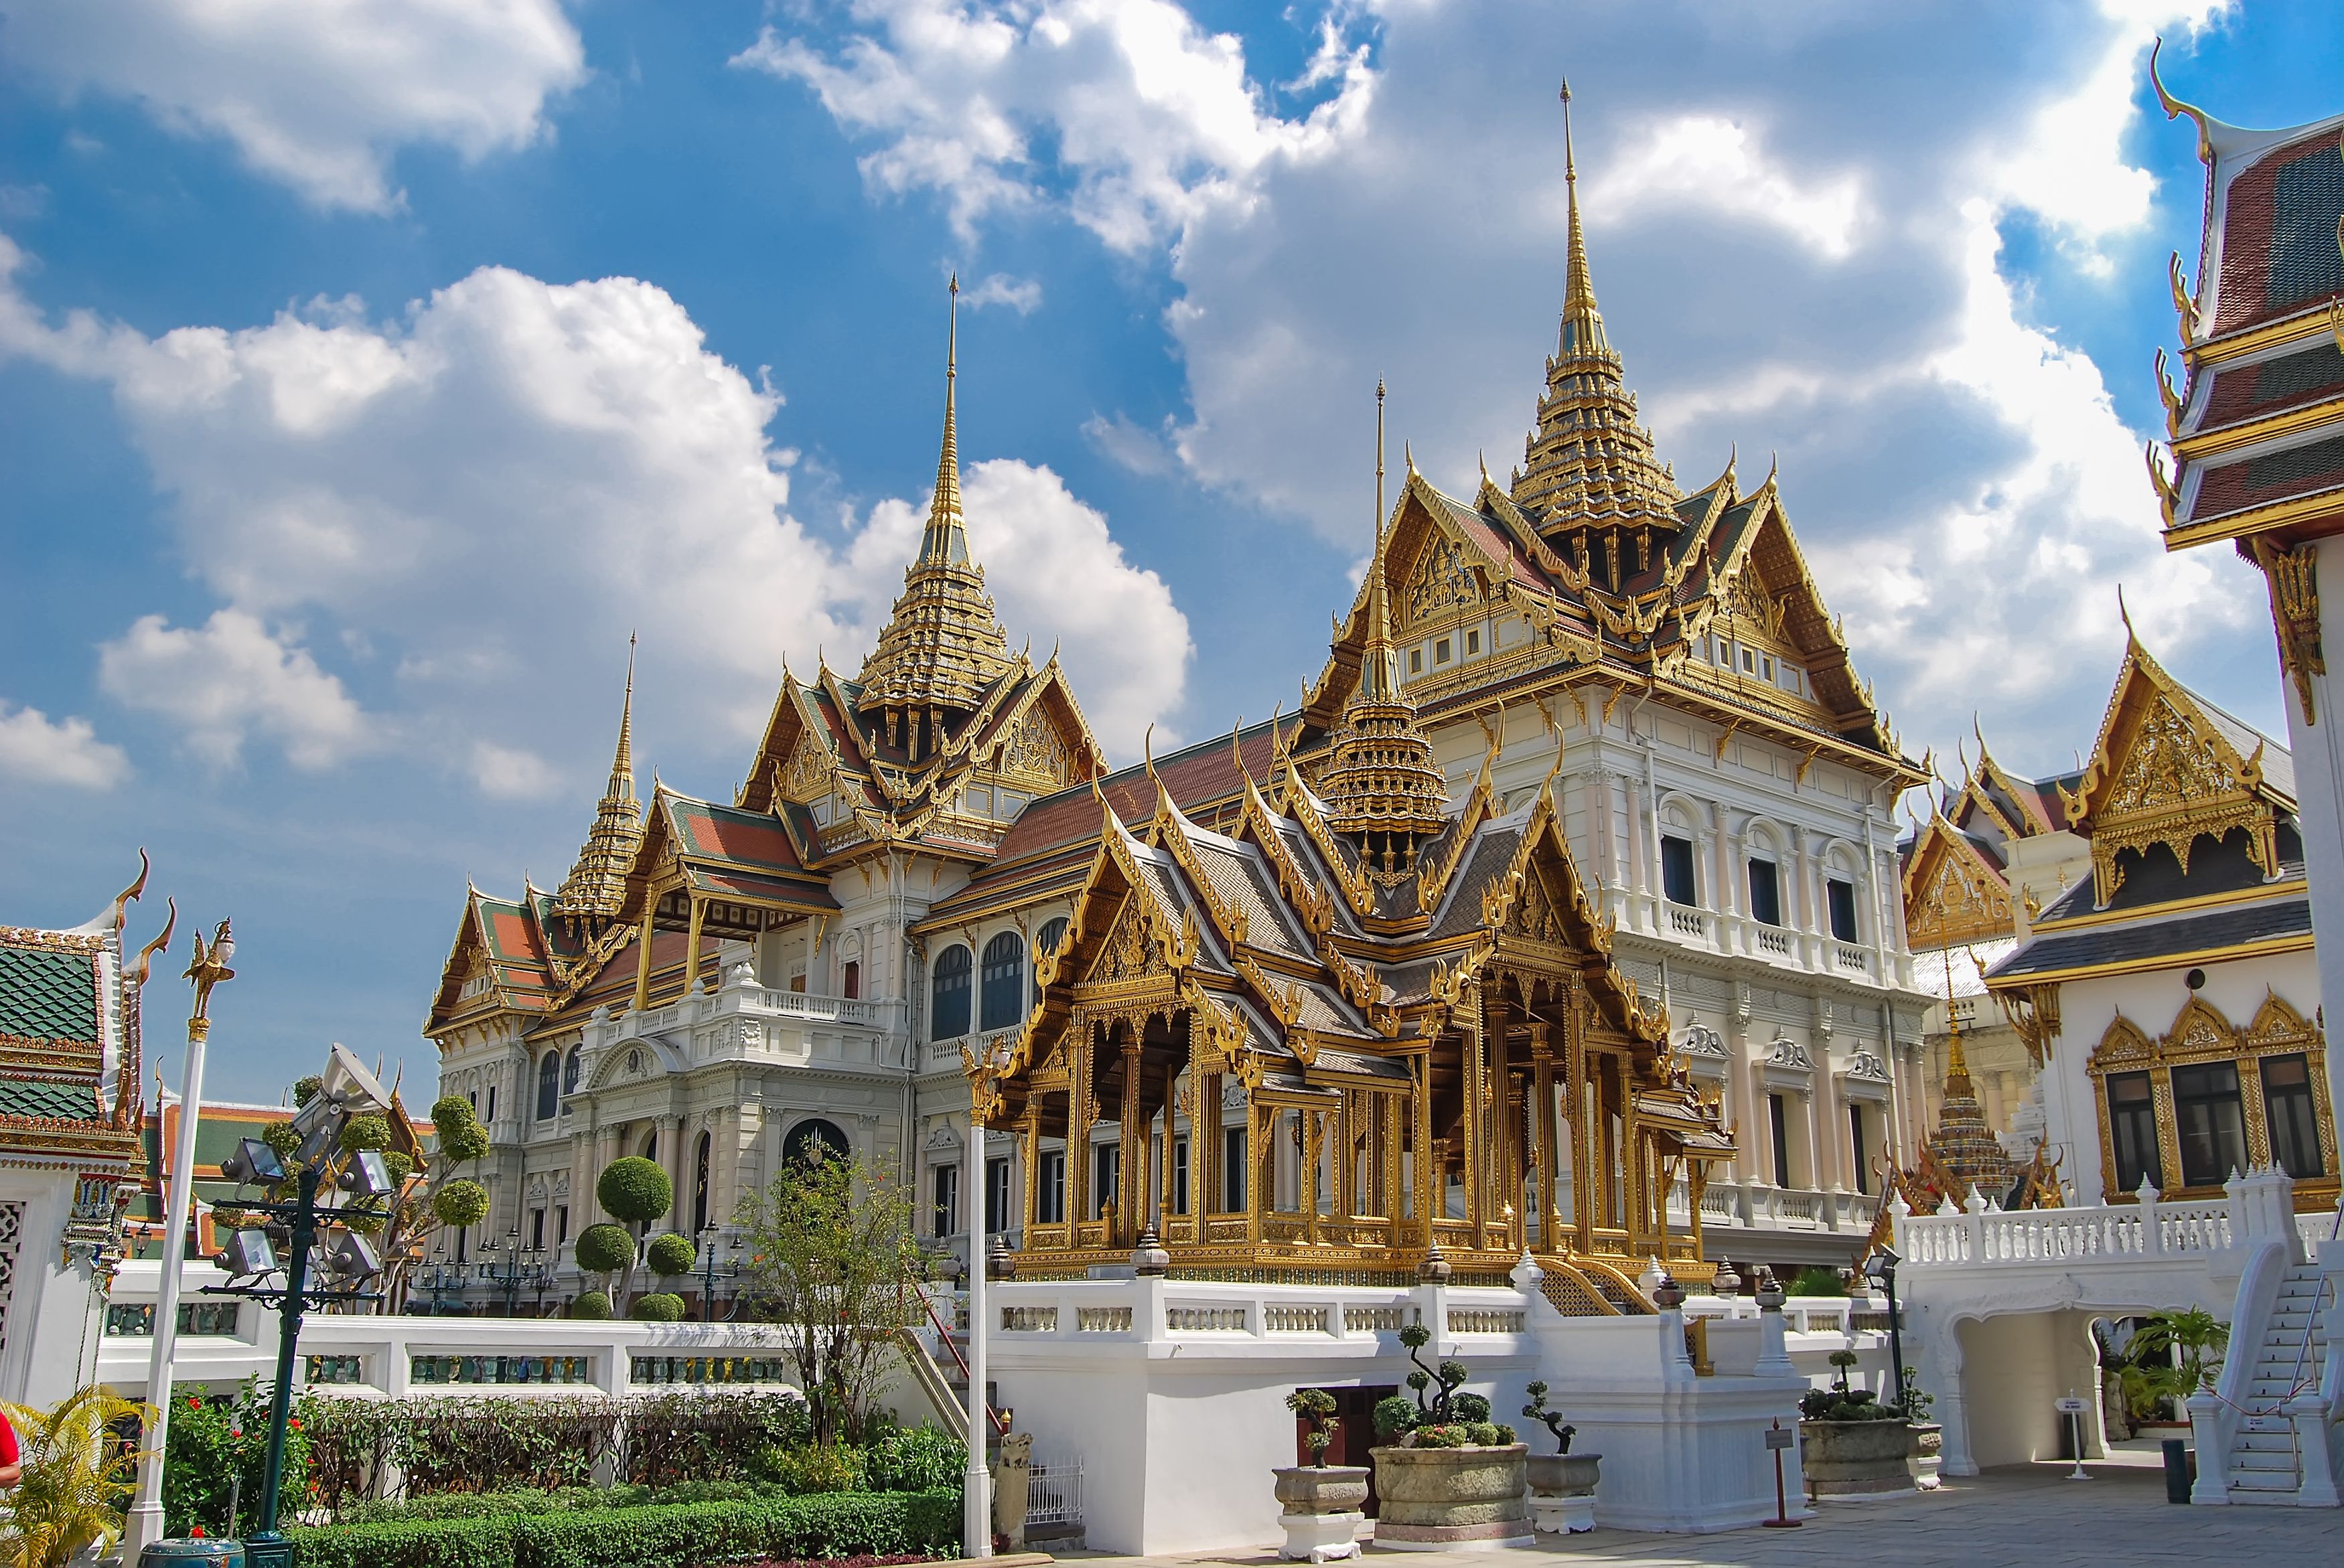 Phra Borom Maha Ratcha Wang, Grand palace, Бангкок, Тайланд, тай, Королевский дворец, архитектура, облака, величественный, столица, достопримечательность, архитектура, азия, поездка, тур, путешествие,, Сытилин Павел